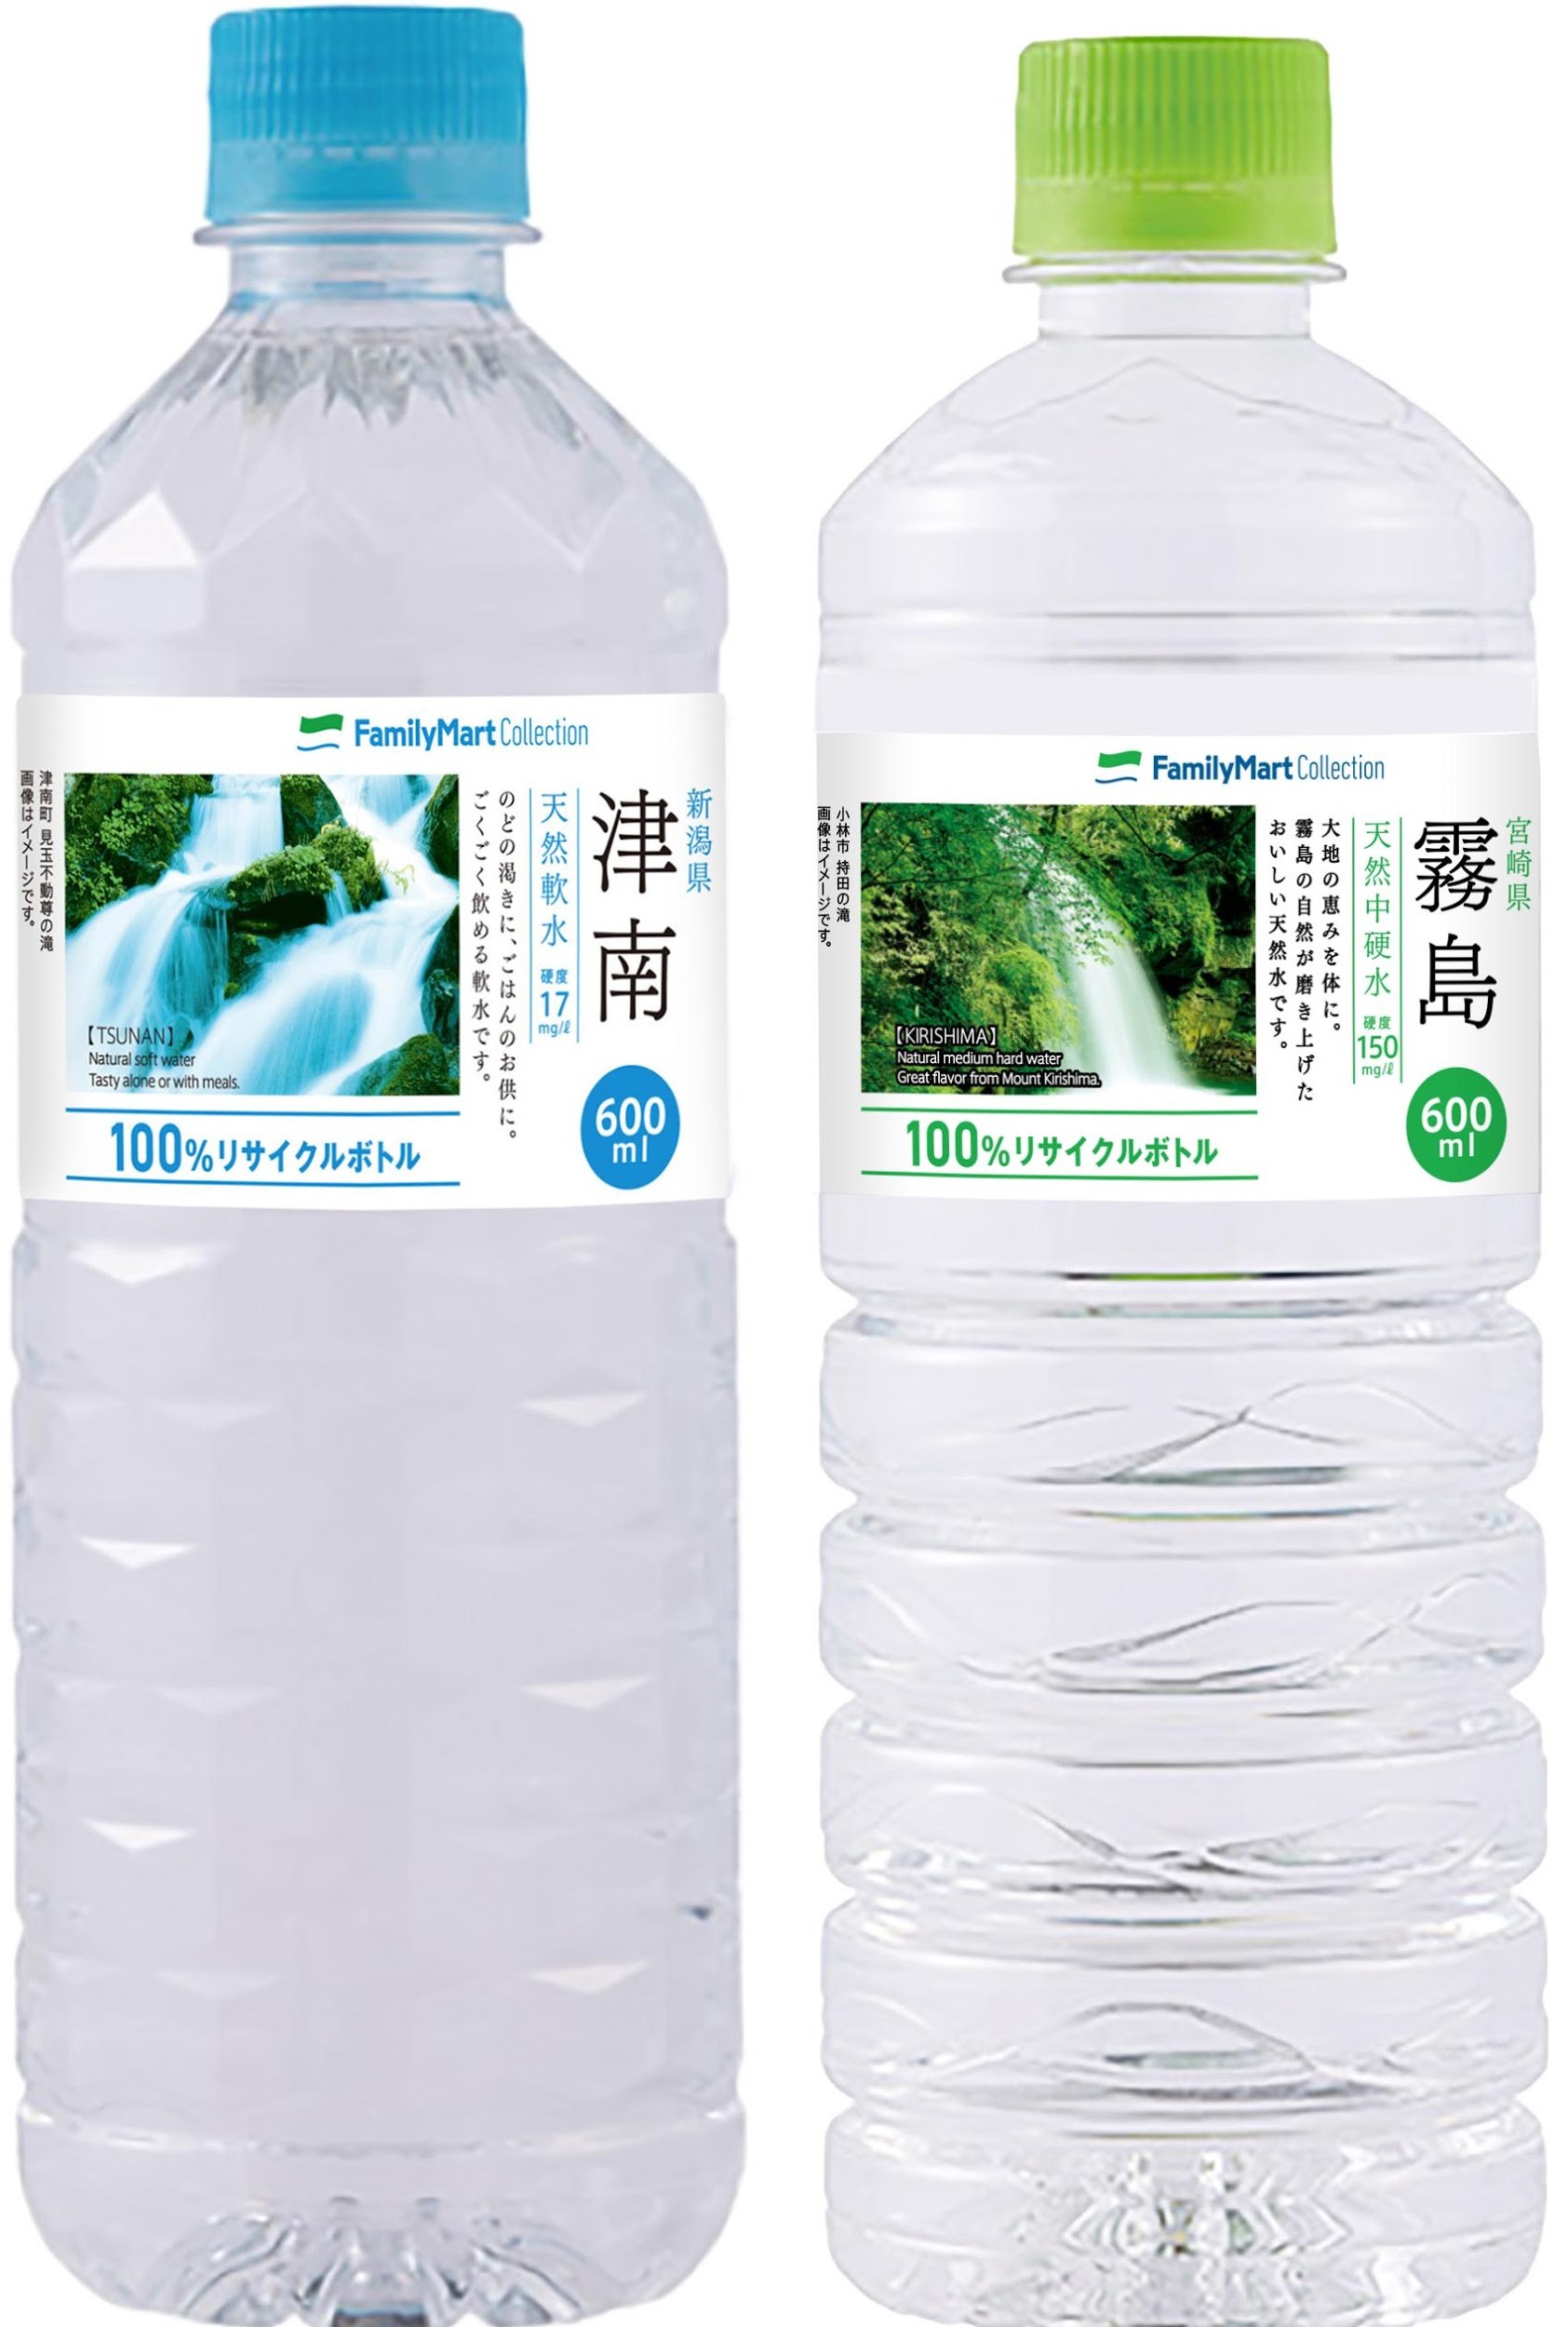 ファミマ40周年 40のいいこと の1つ 食の安全 安心 地球にもやさしい プライベートブランドの 水 の容器を100 リサイクルペットボトル ボトルtoボトル に切り替え 株式会社ファミリーマートのプレスリリース